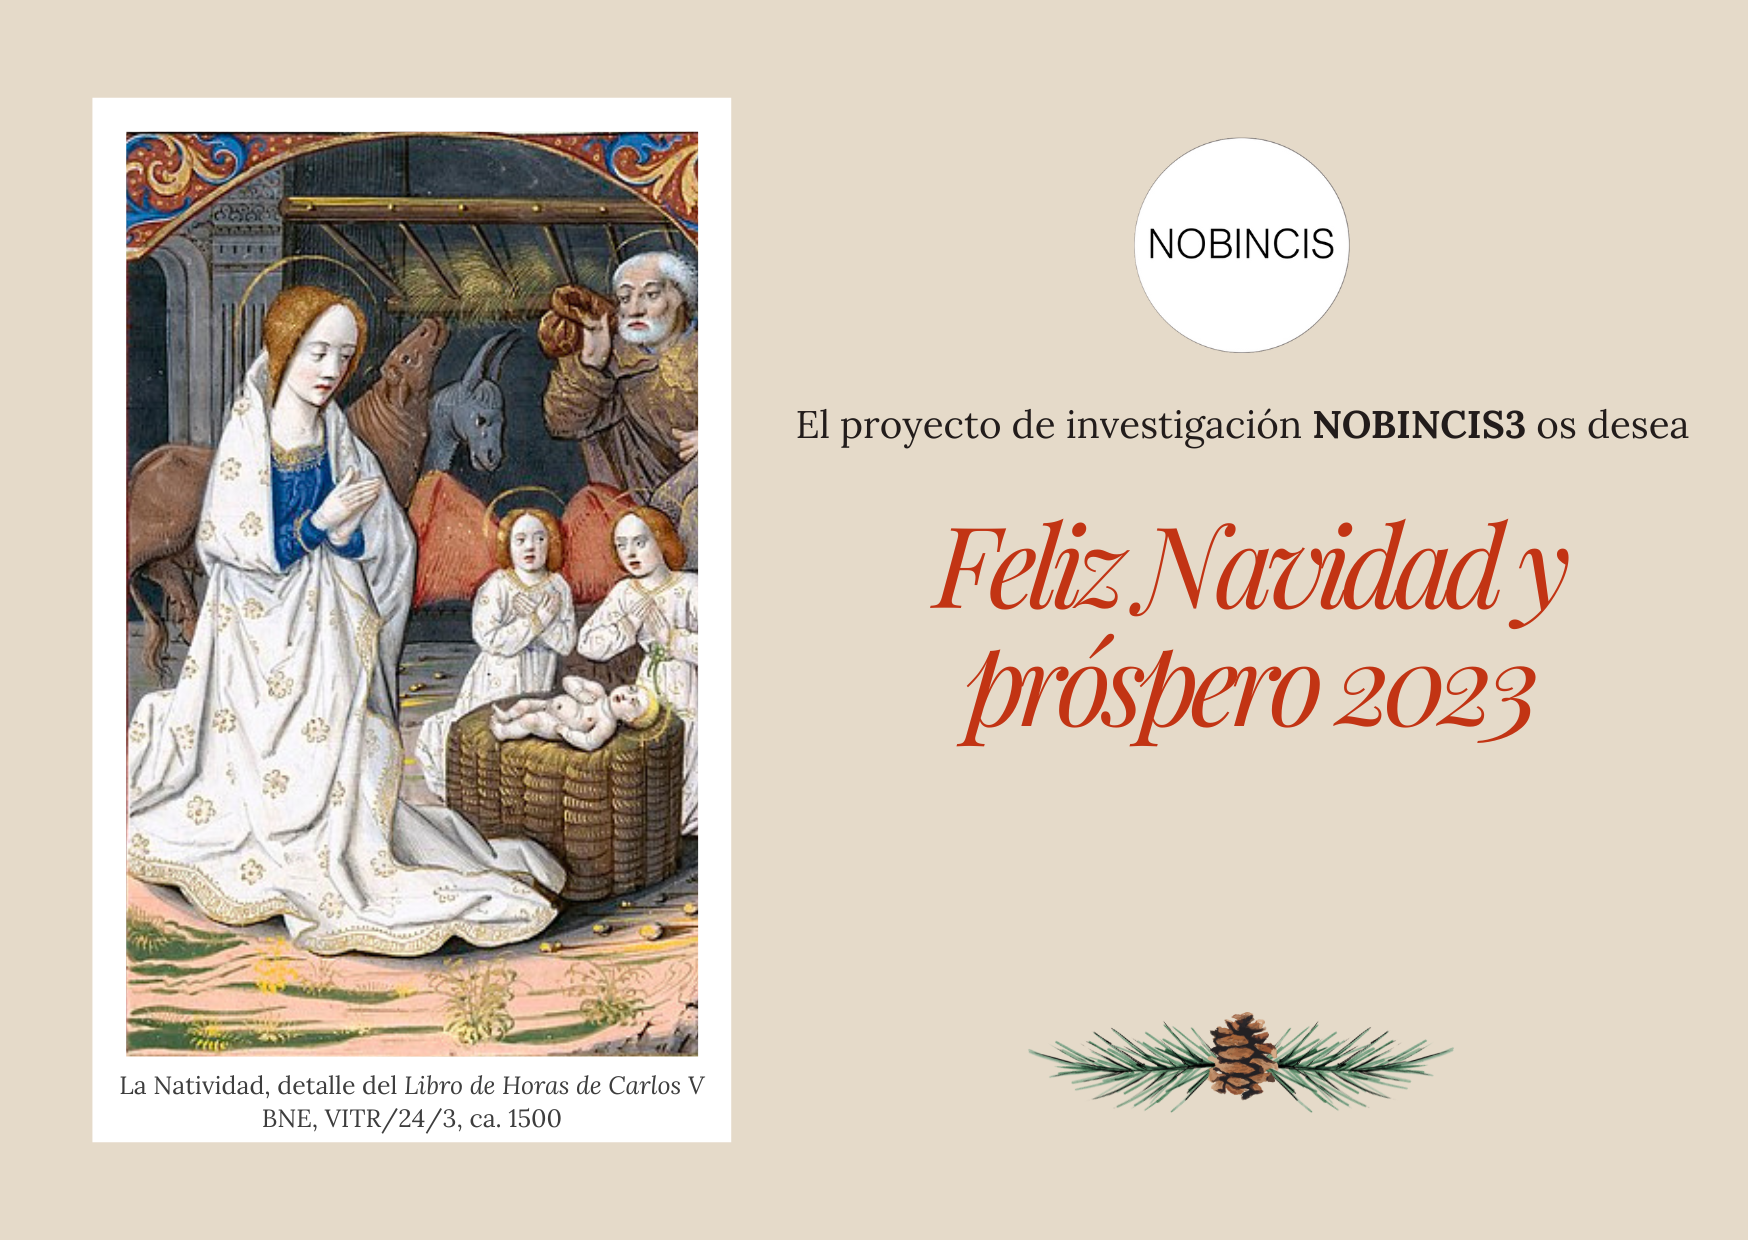 NOBINCIS os desea Feliz Navidad y próspero 2023